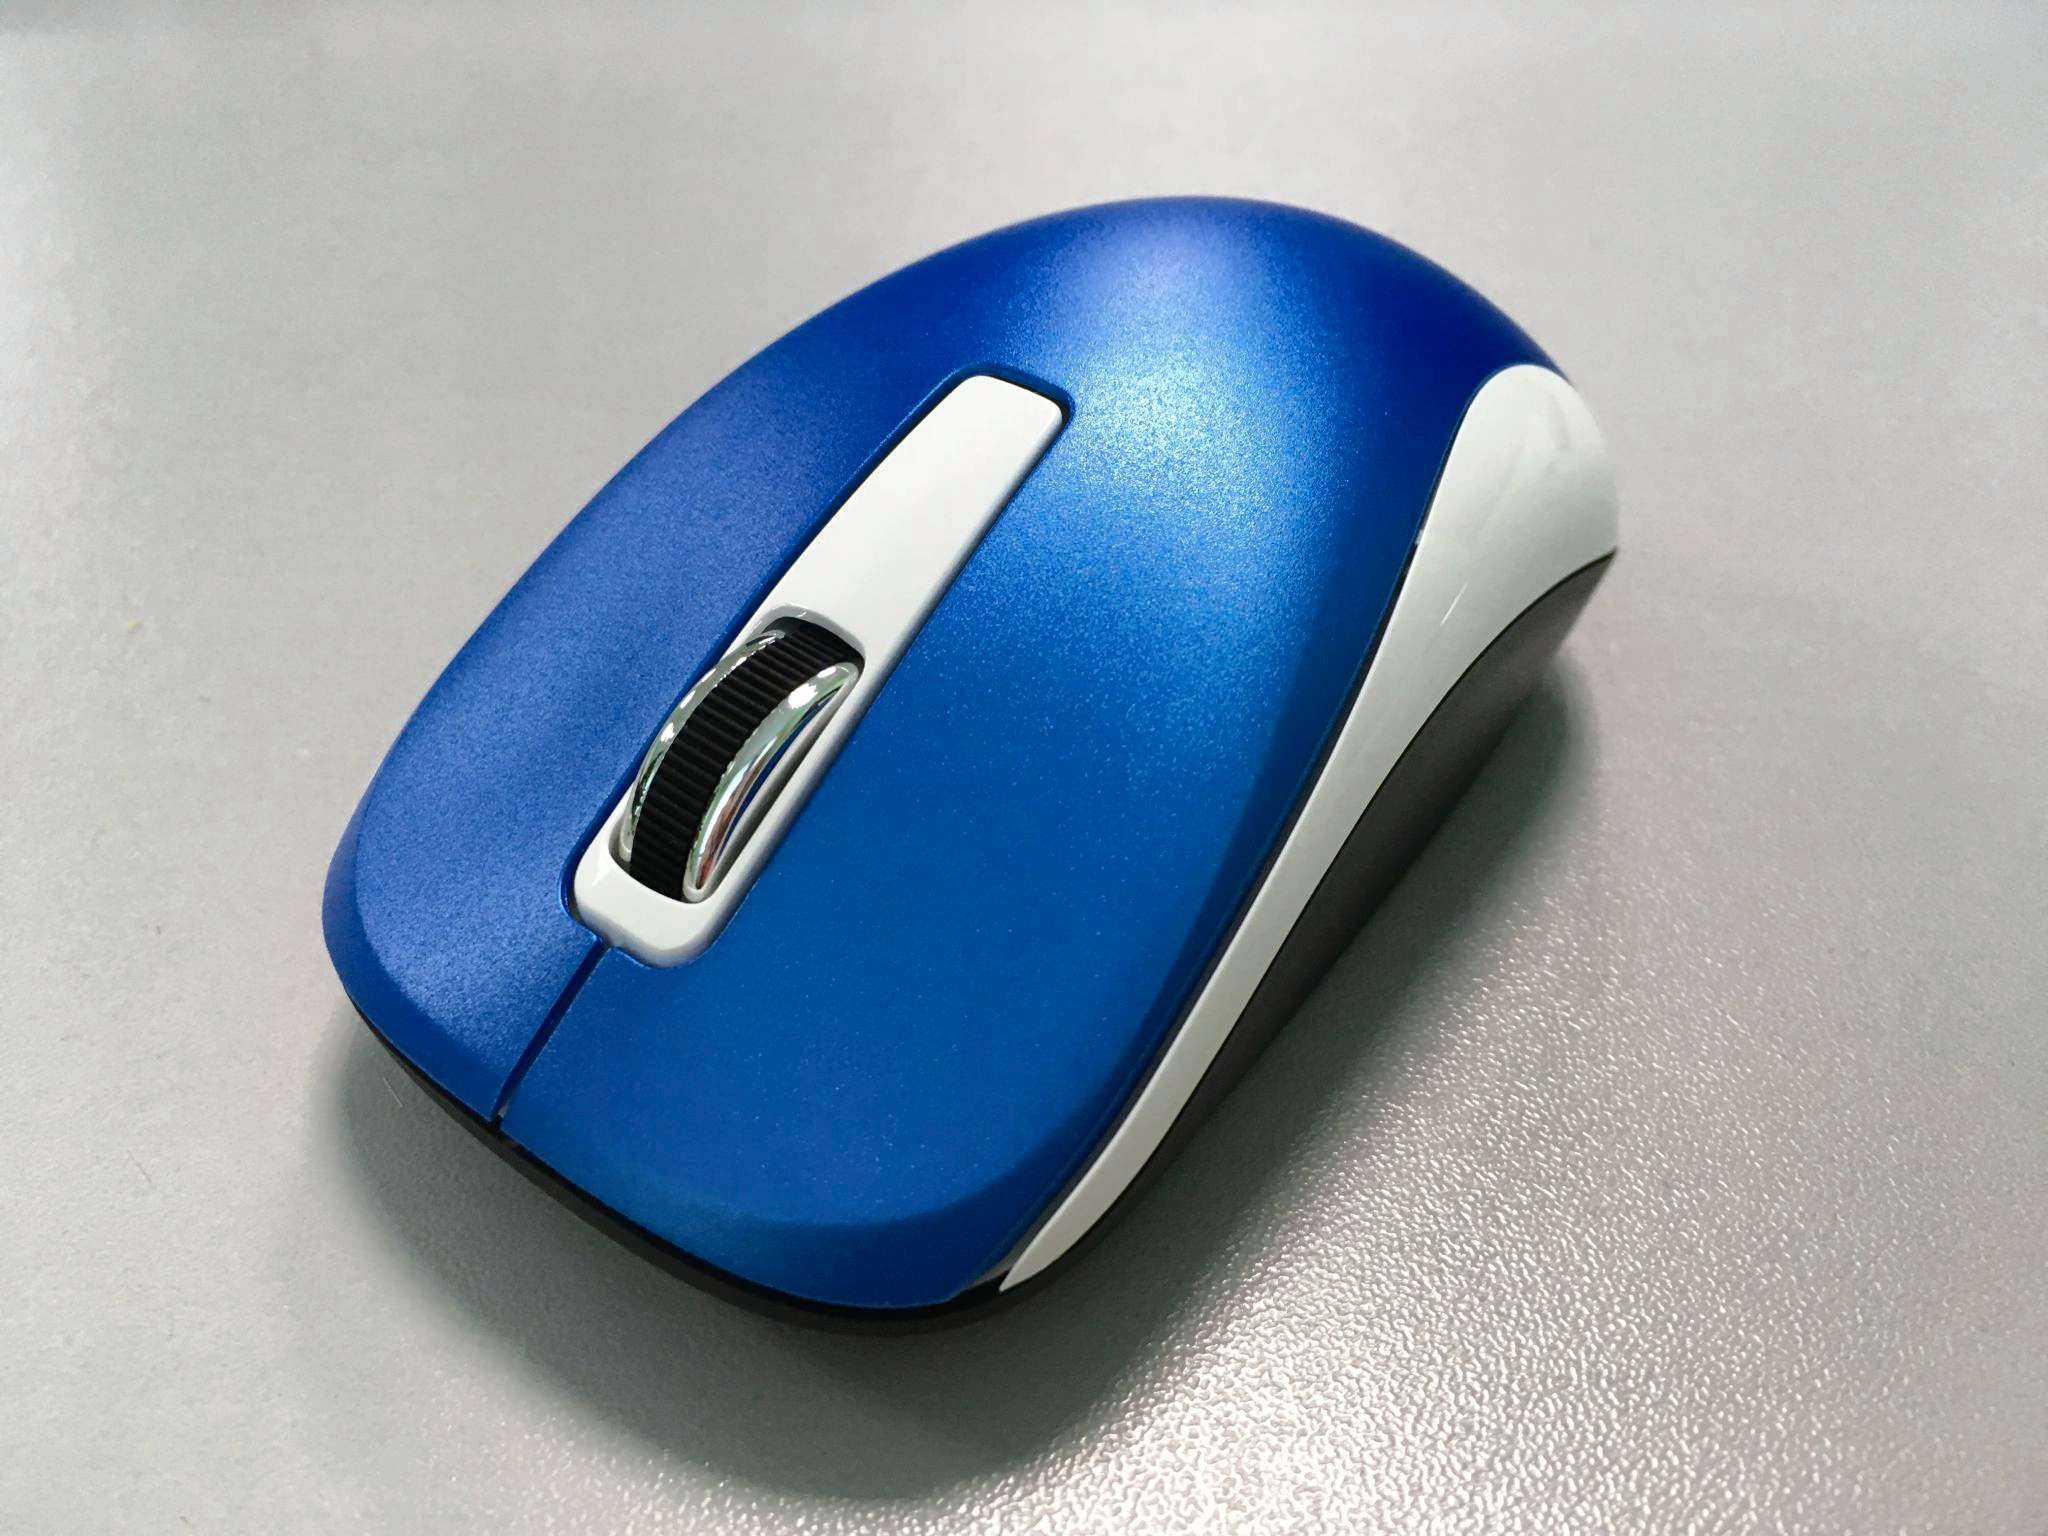 Беспроводная мышь genius wireless blueeye nx-7005 blue usb 2.0 — купить, цена и характеристики, отзывы